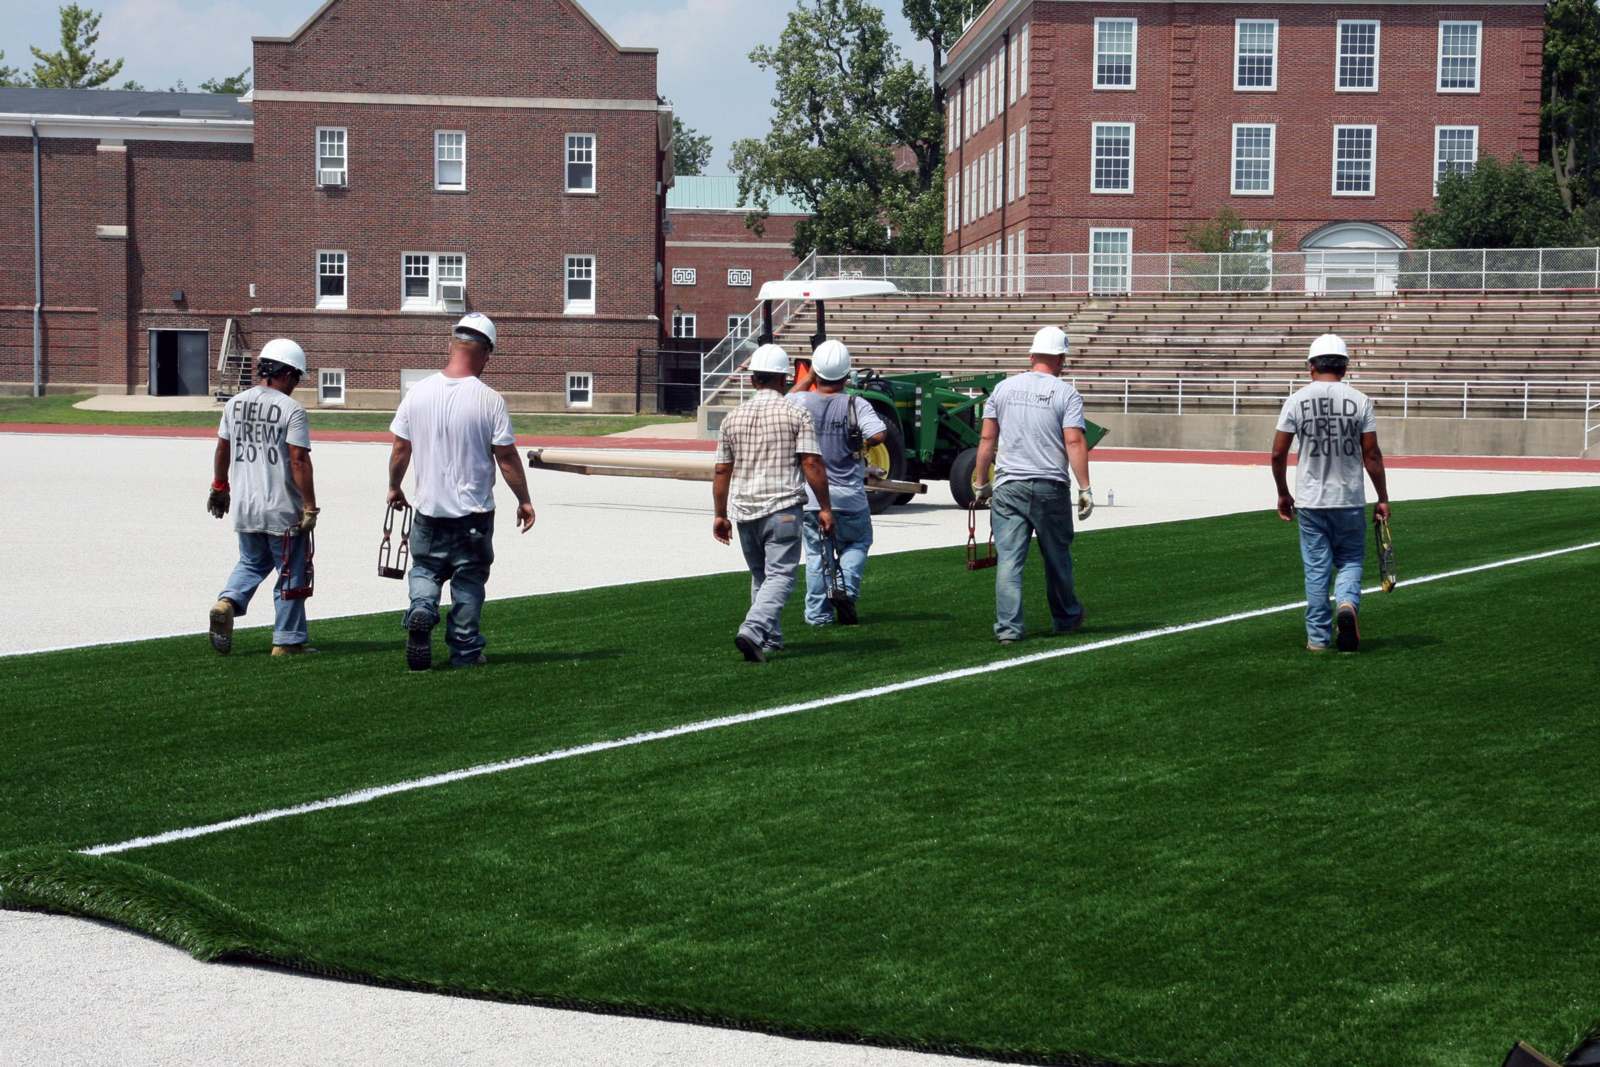 a group of men wearing white helmets walking on a field